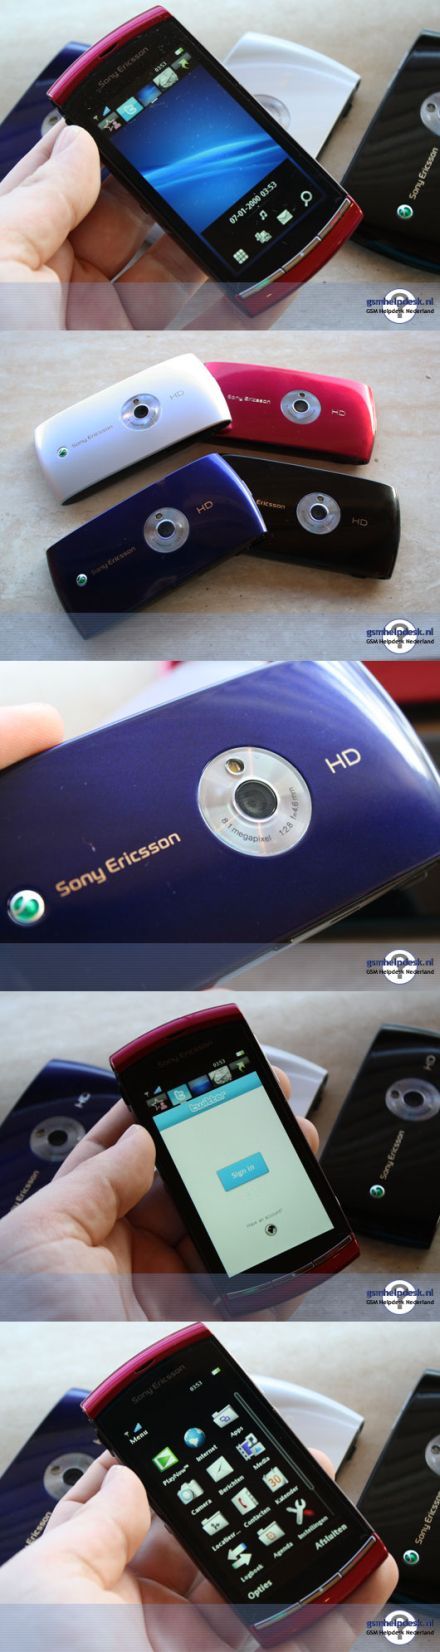 Sony Ericsson Vivaz élõképek és videó